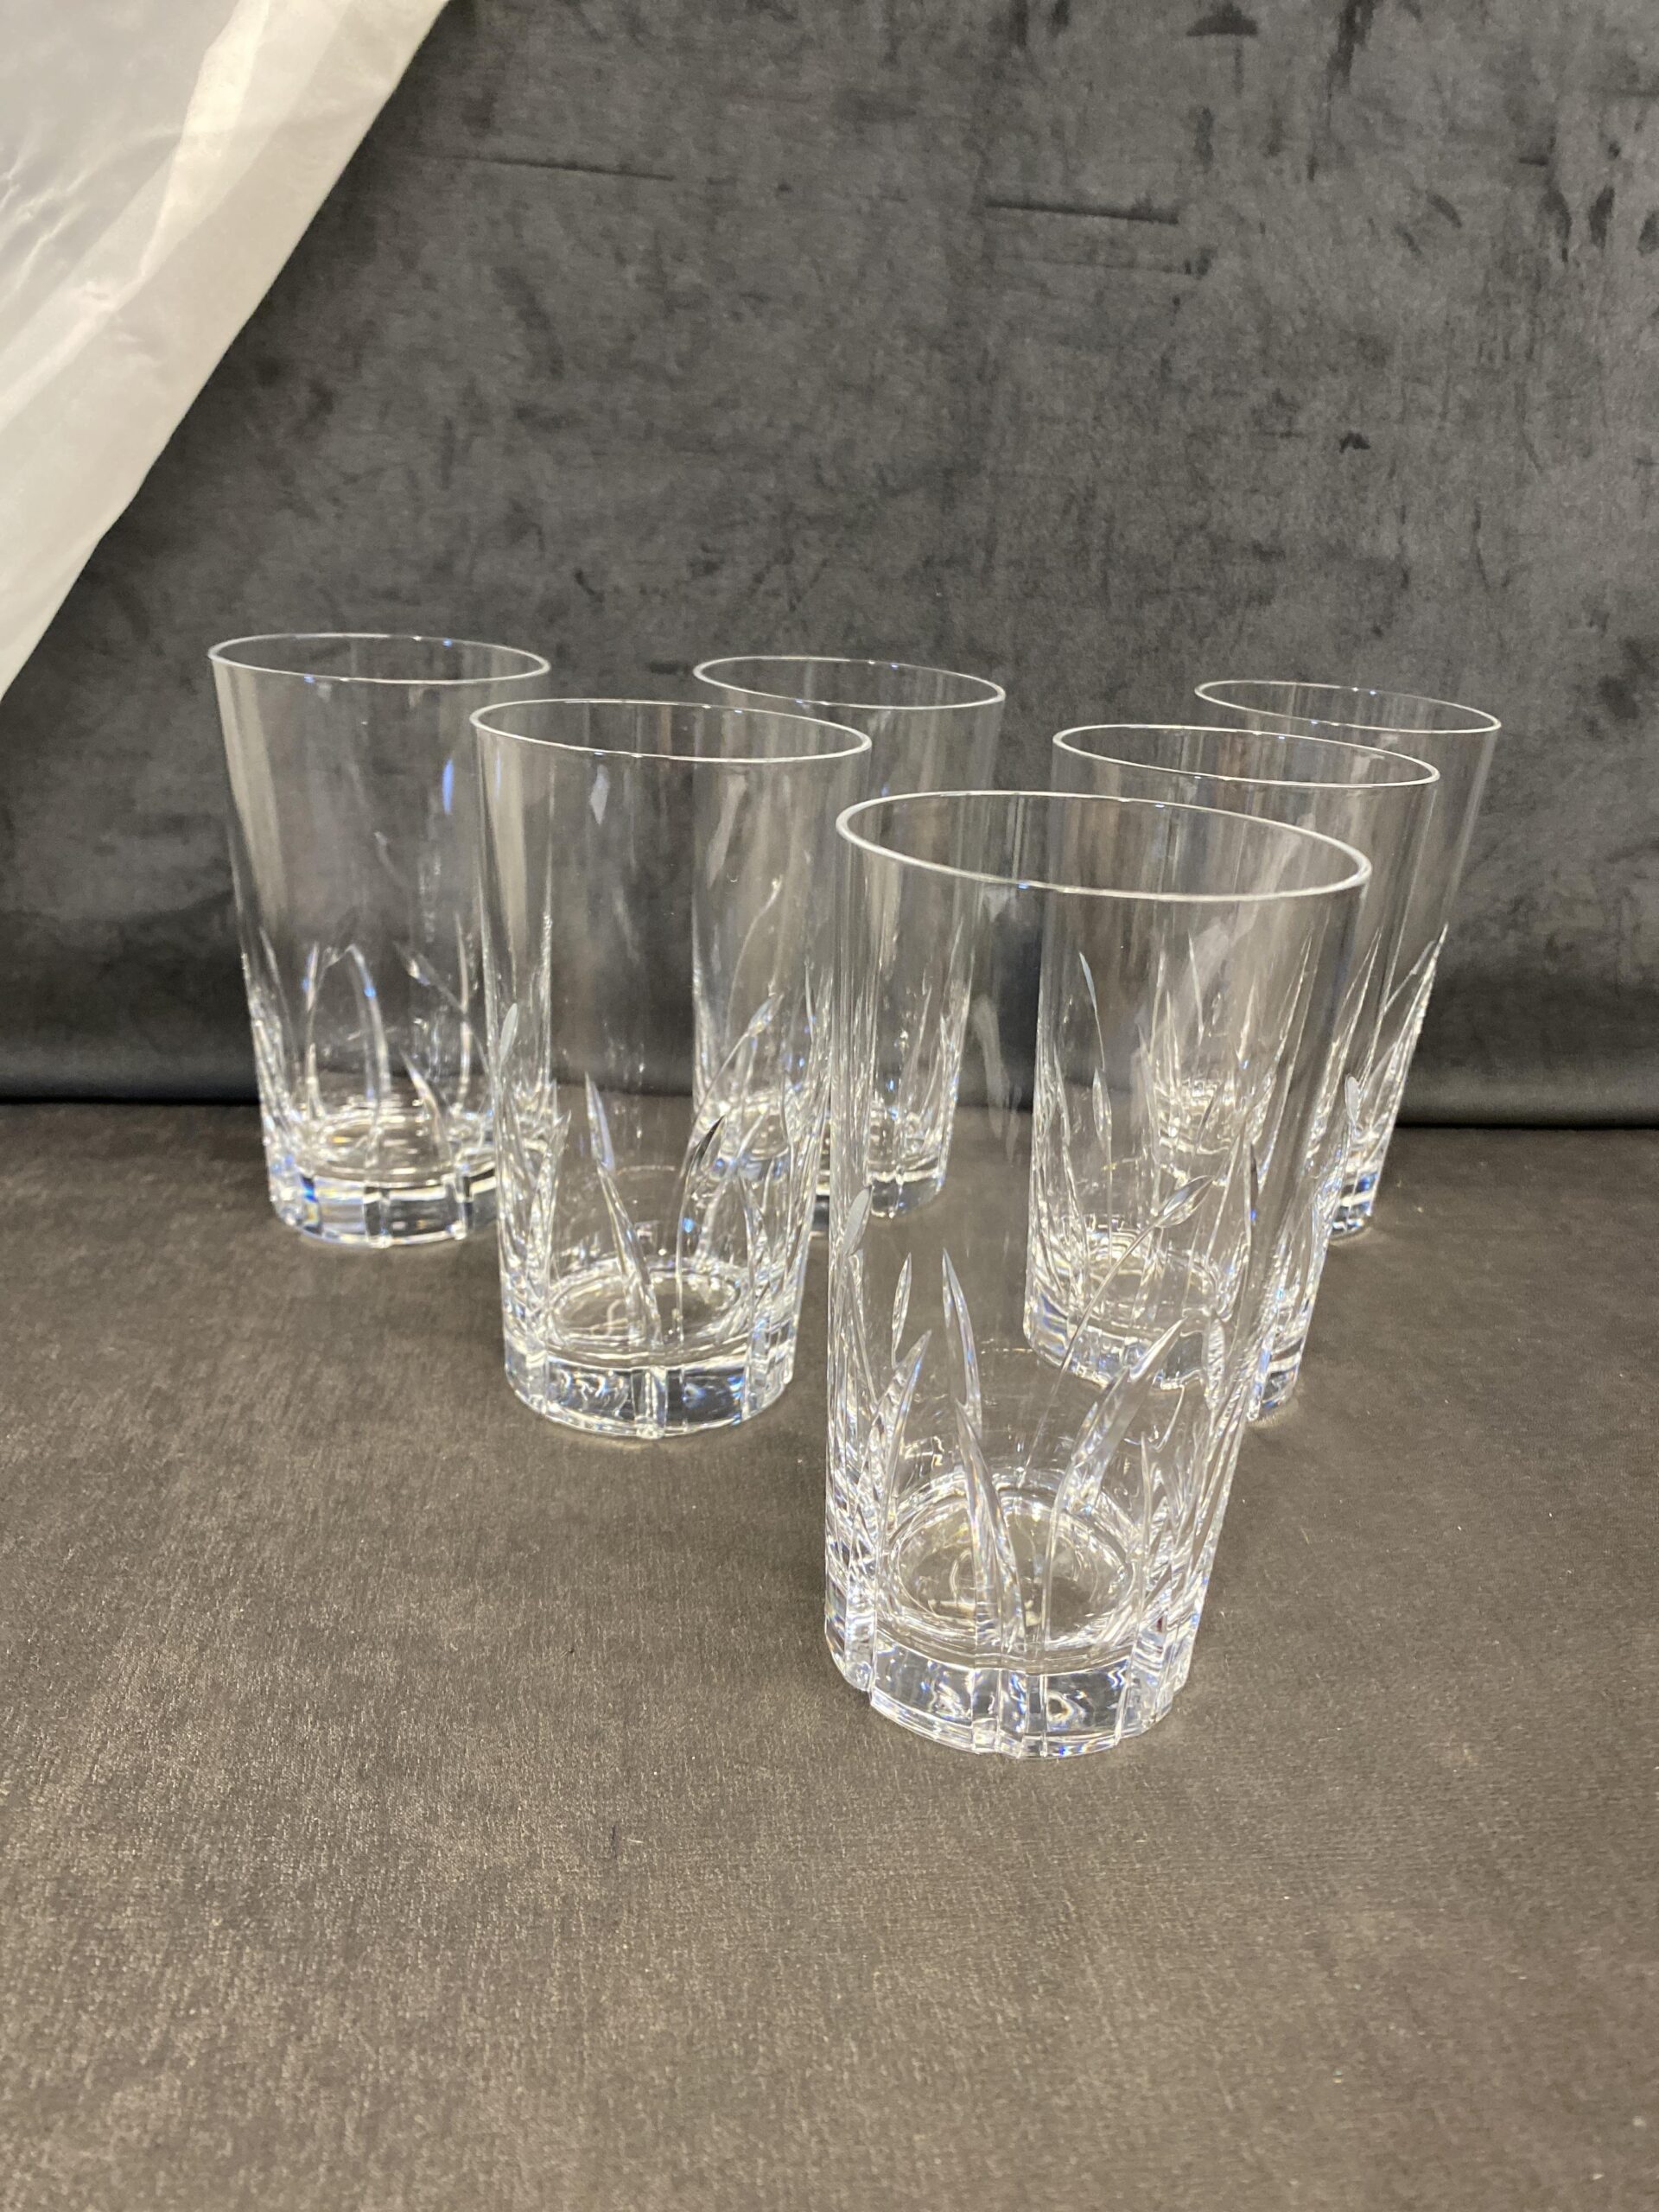 Set of 6 Durand “Pistil” Crystal Highball Glasses